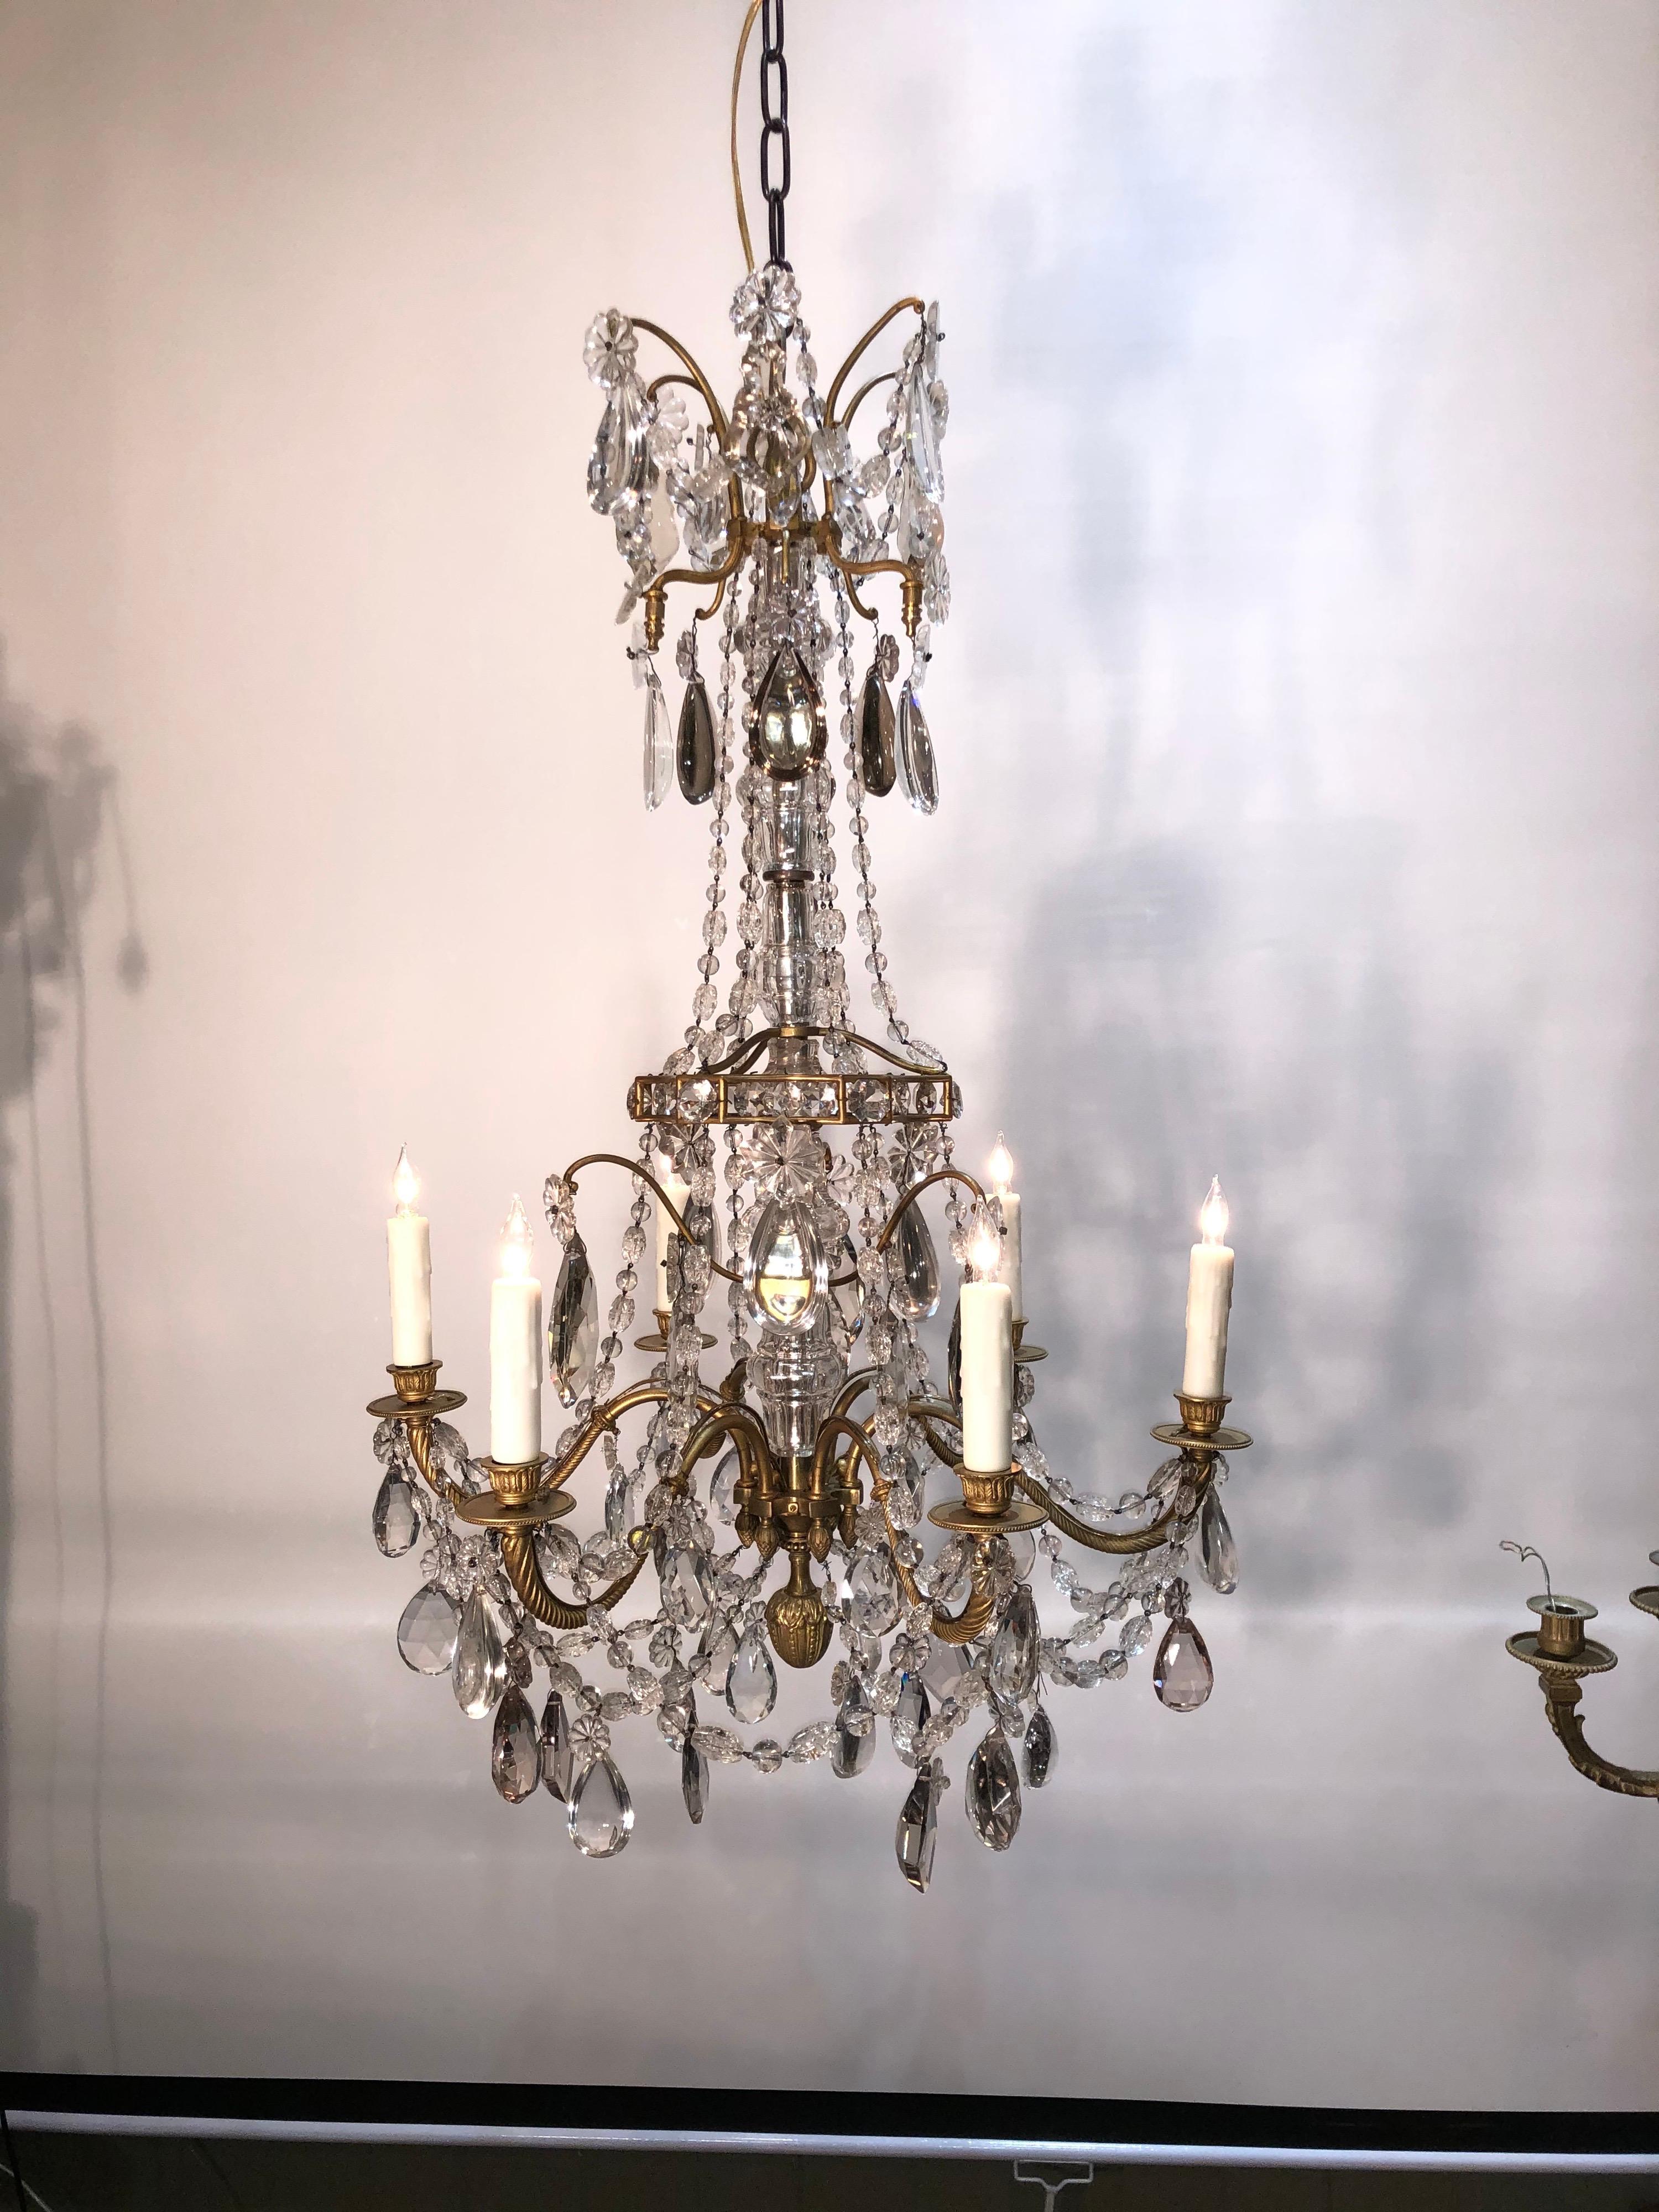 Magnifique lustre français à 6 lumières du milieu du 19e siècle. Très beau lustre de style Louis XV en bronze doré et cristal. Colonne en cristal taillé facetté entourée d'un cadre ouvert en forme de cage d'oiseau en bronze doré. 6 branches, toutes